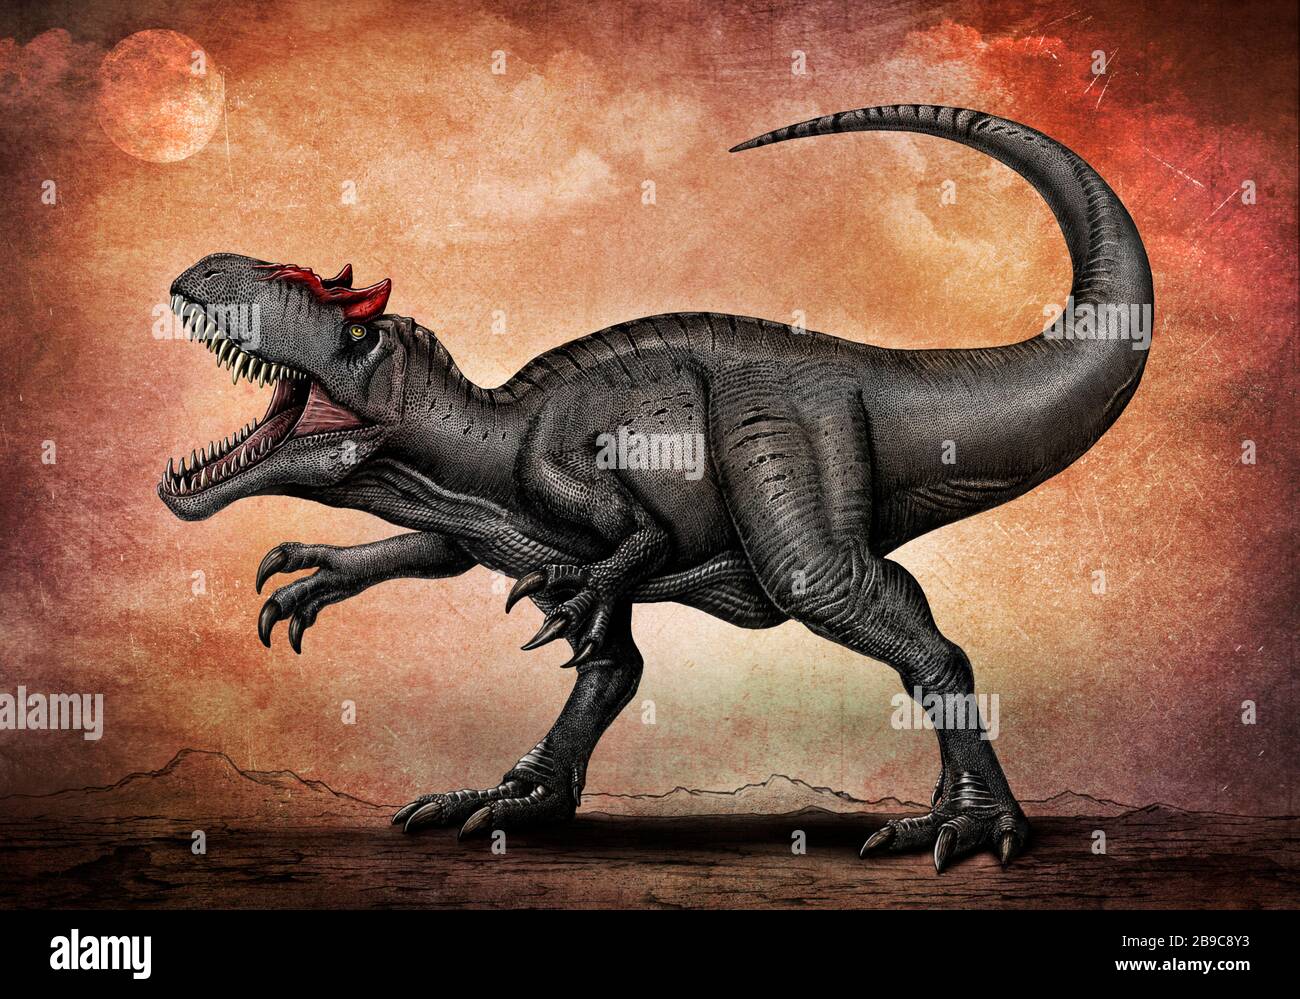 Allosaurus dinosaur. Stock Photo